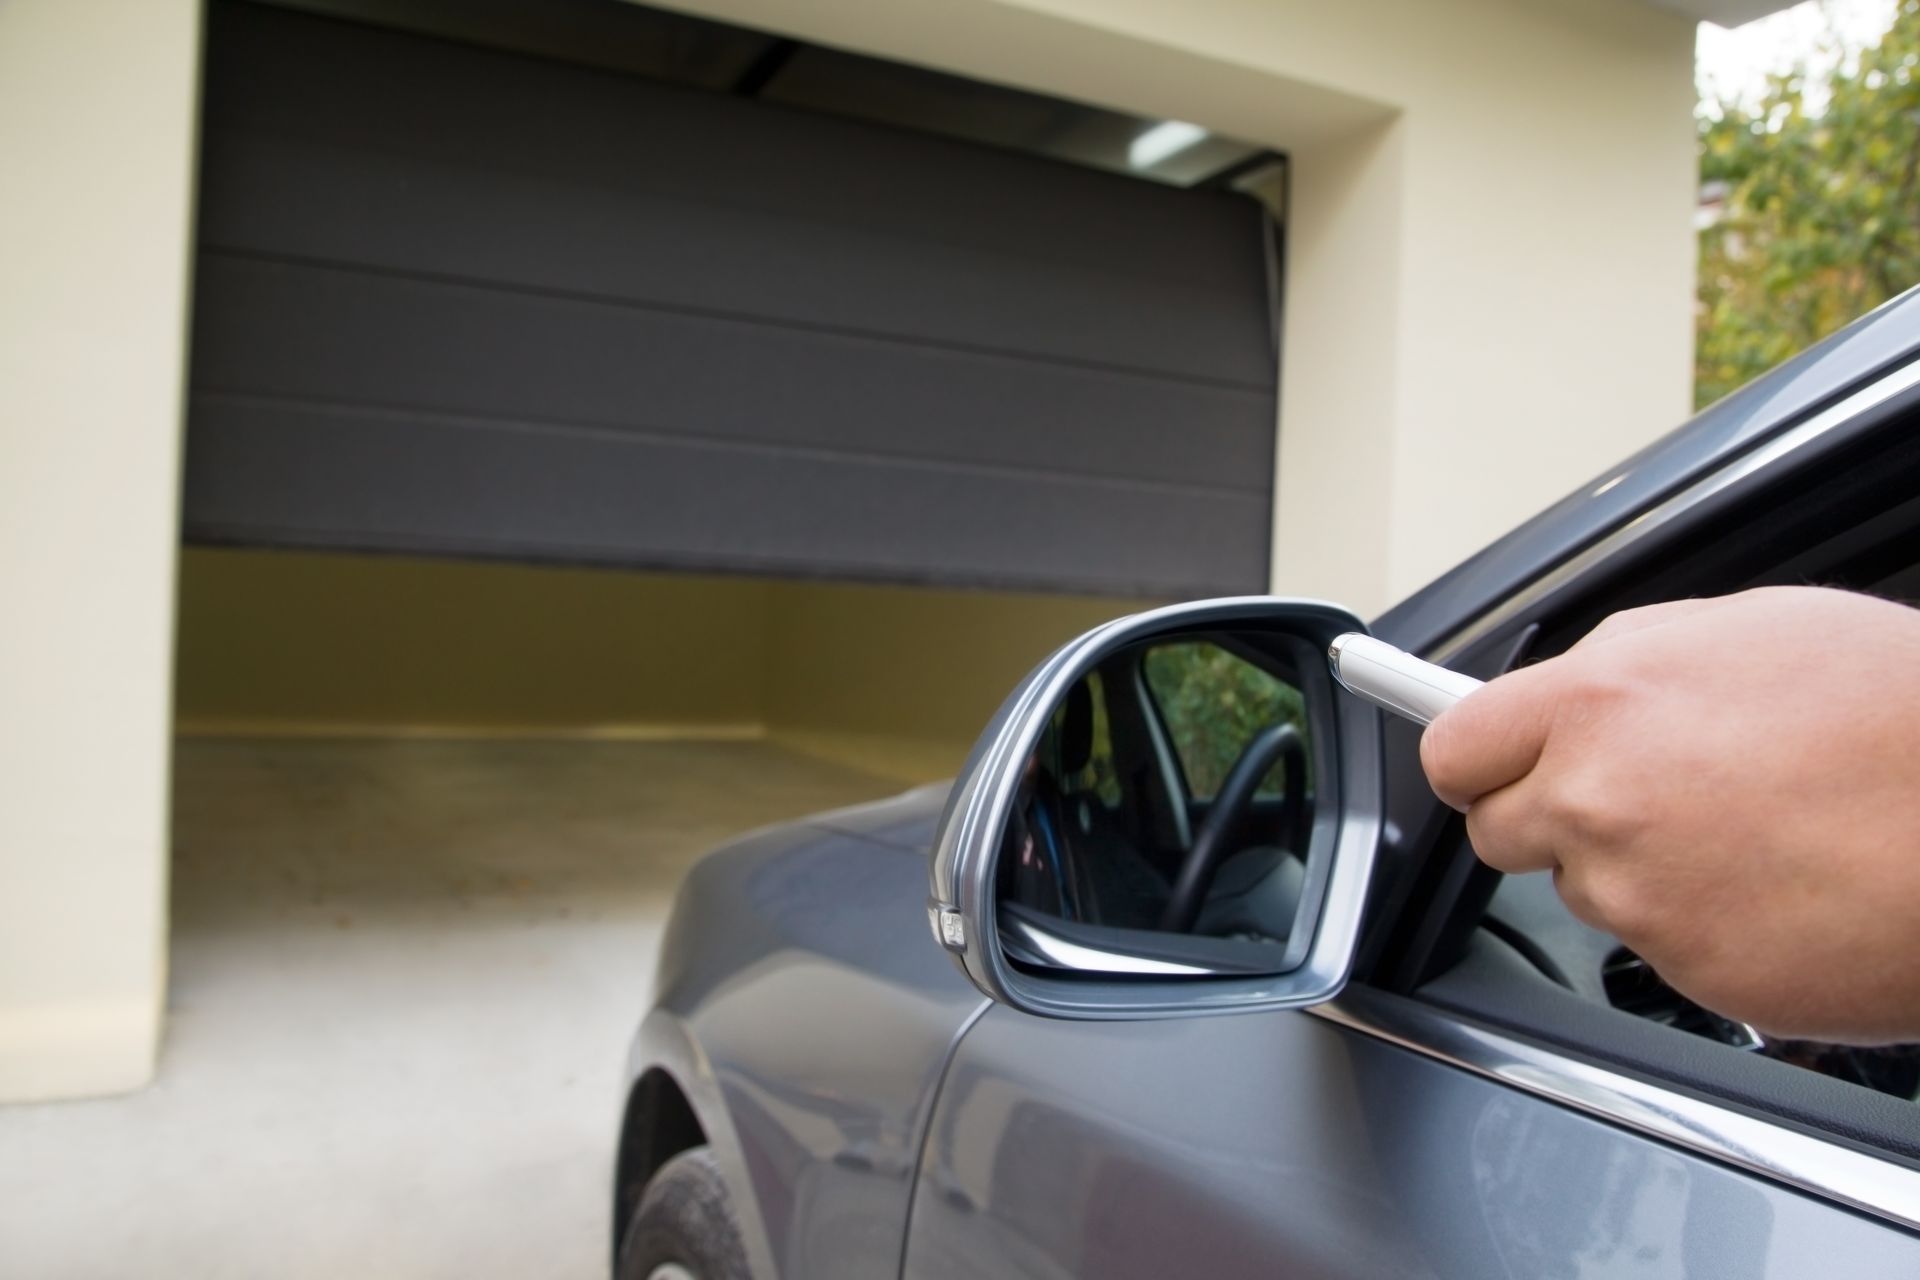 driver is able to open garage door with garage door remote